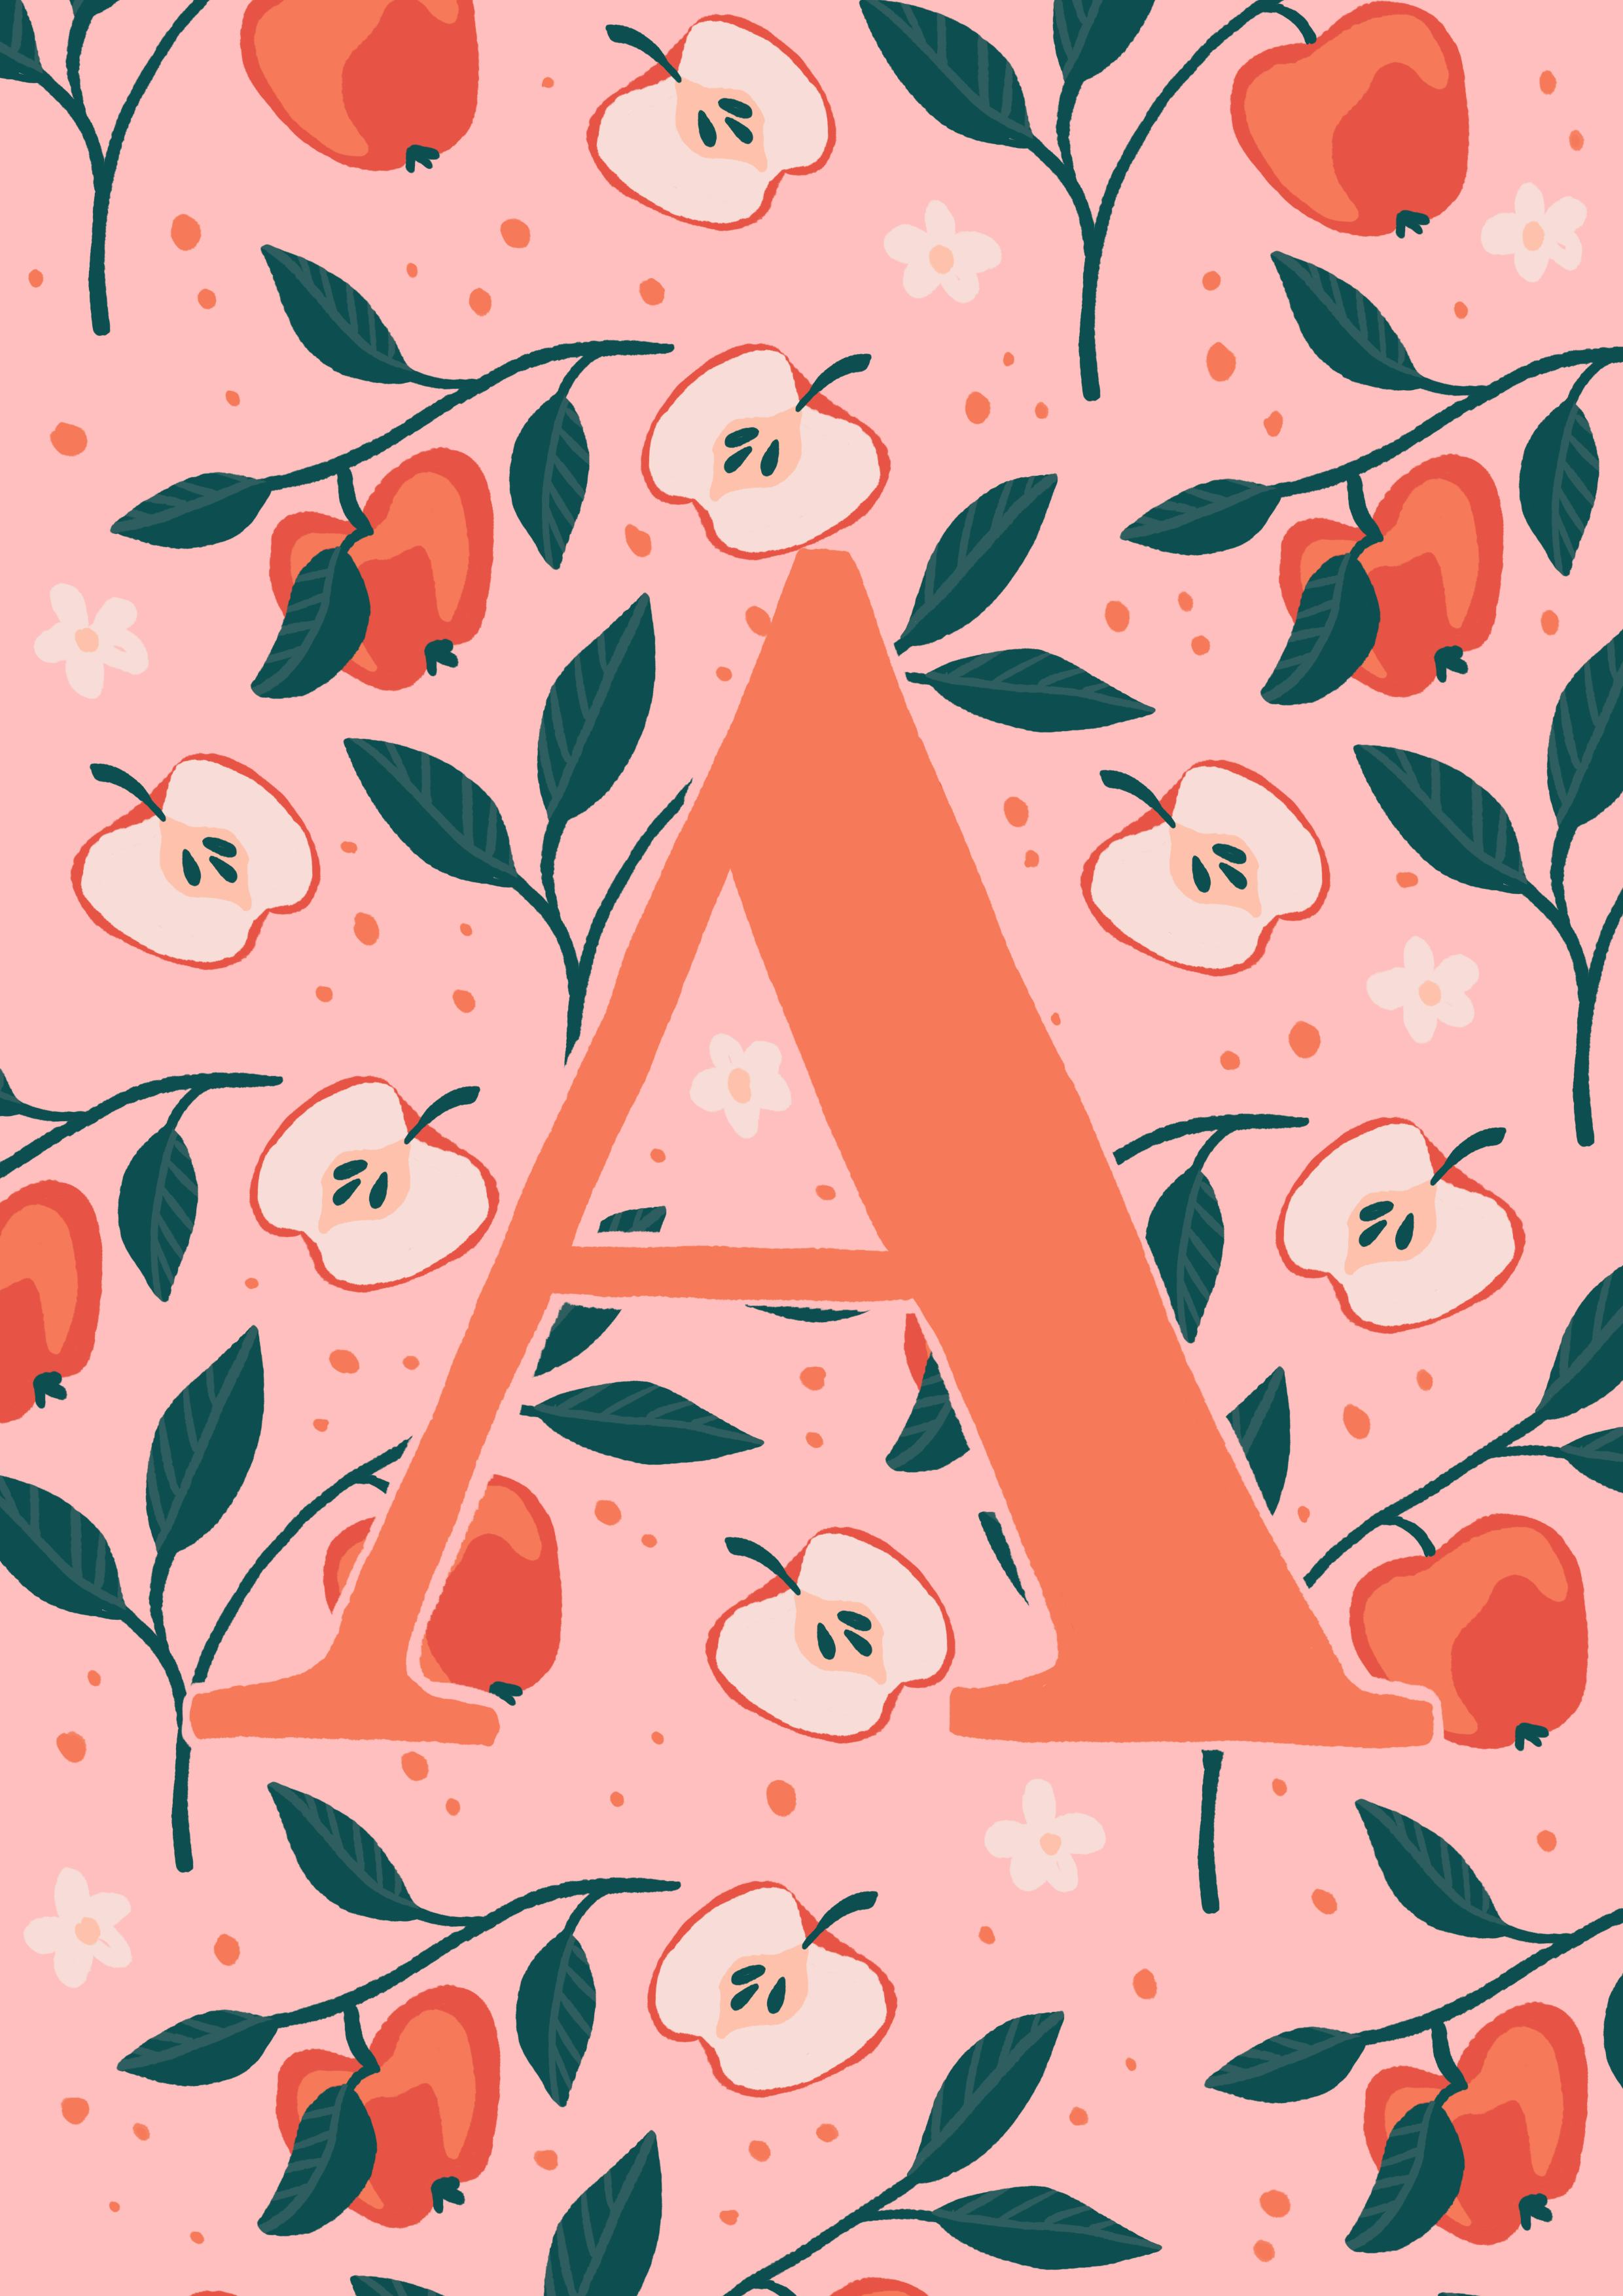 Buchstabe A auf Hintergrund mit illustrierten Äpfeln